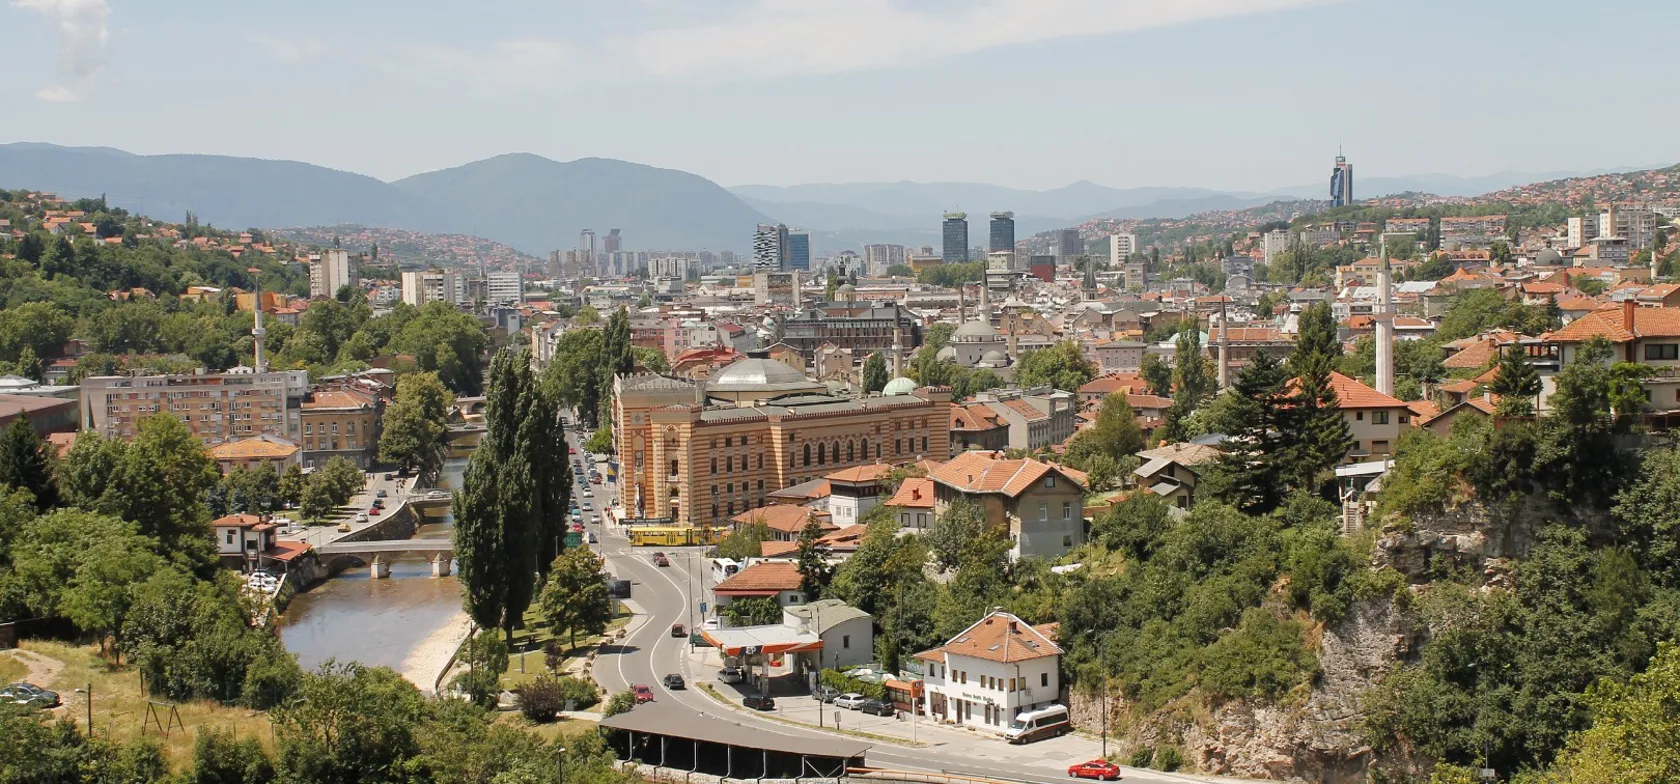 Øst møder vest i Sarajevo. Foto Rusmir Gadžo